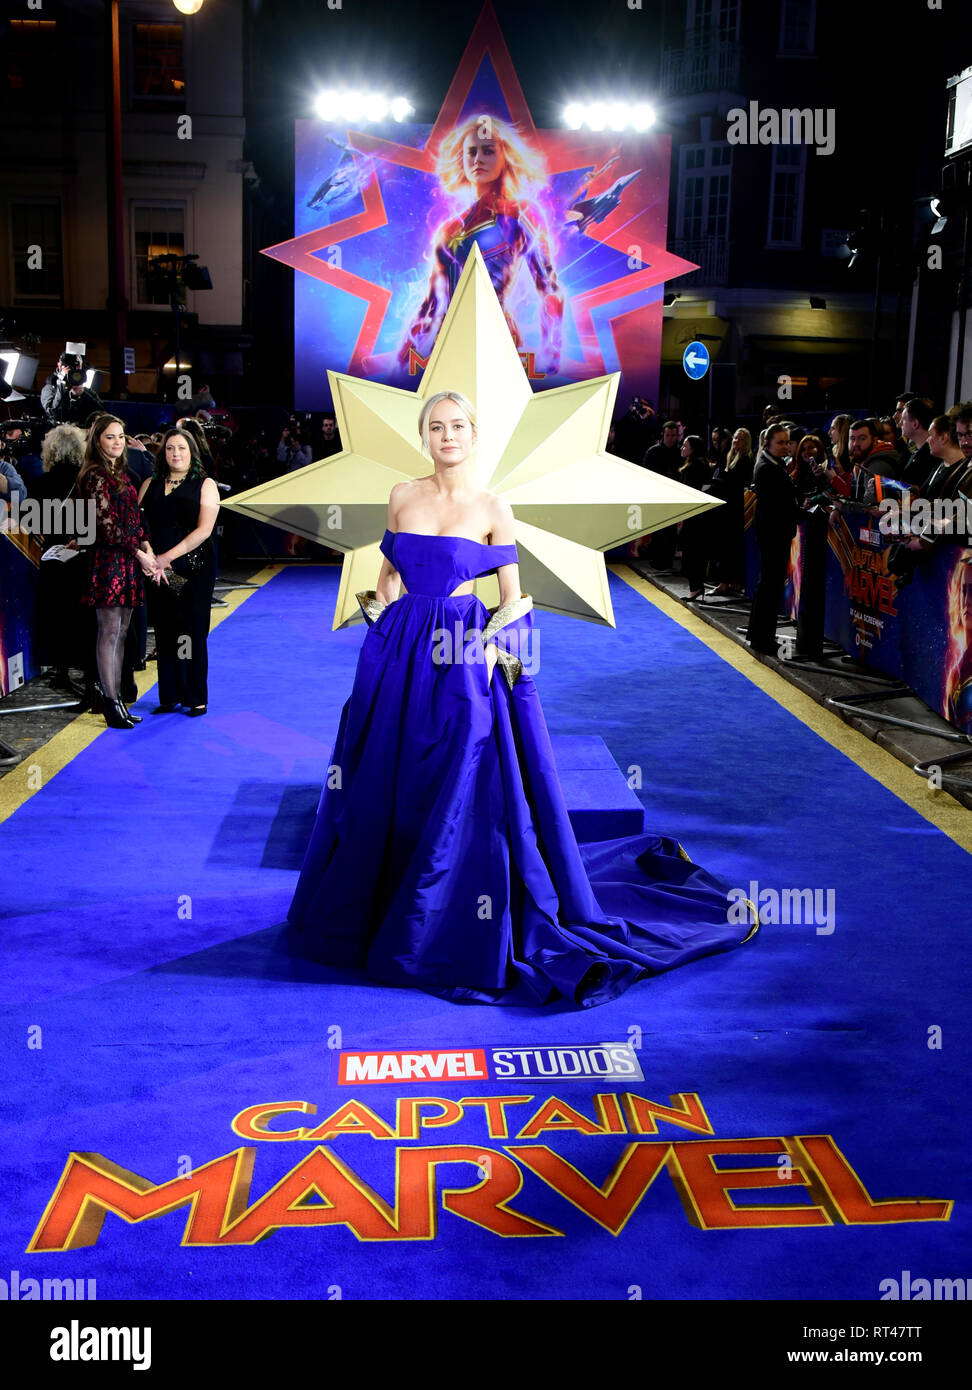 Brie Larson frequentando il Capitano Marvel Premiere Europeo tenutosi presso il Curzon Mayfair, Londra. Picture Data: mercoledì 27 febbraio, 2019. Foto di credito dovrebbe leggere: Ian West/PA FILO Foto Stock